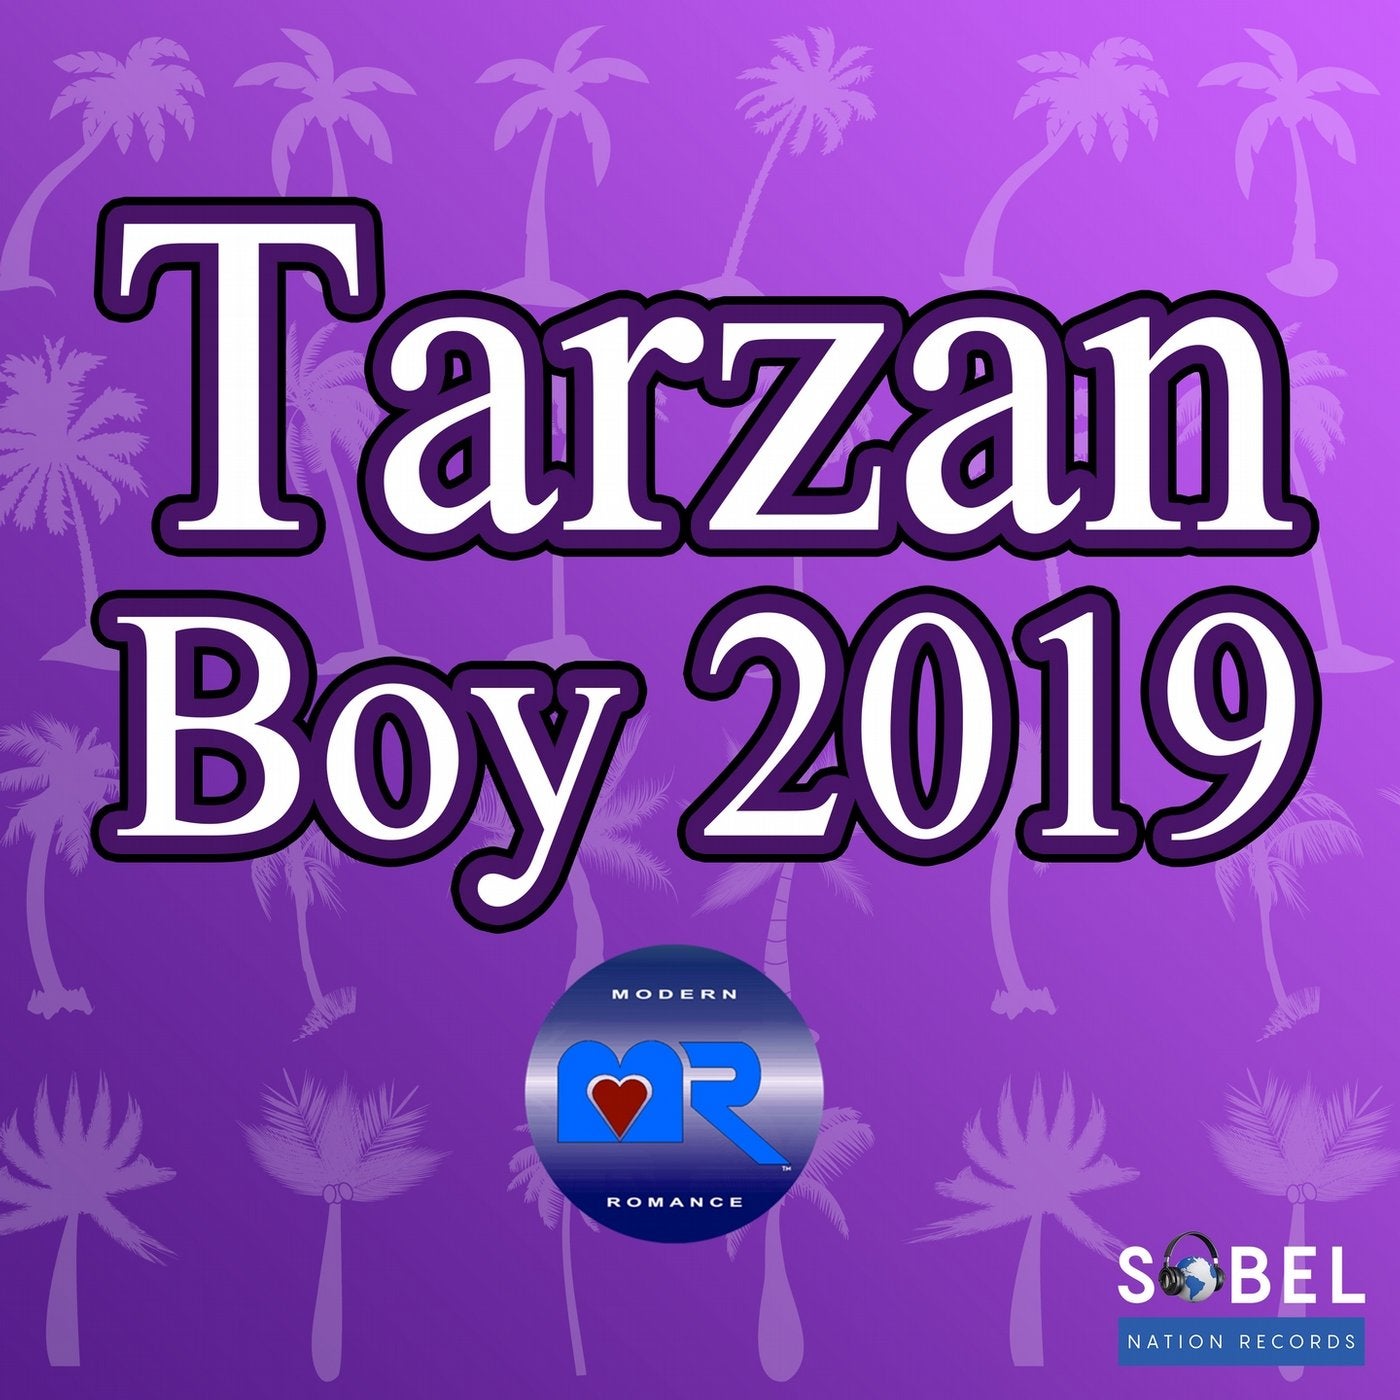 Tarzan Boy 2019